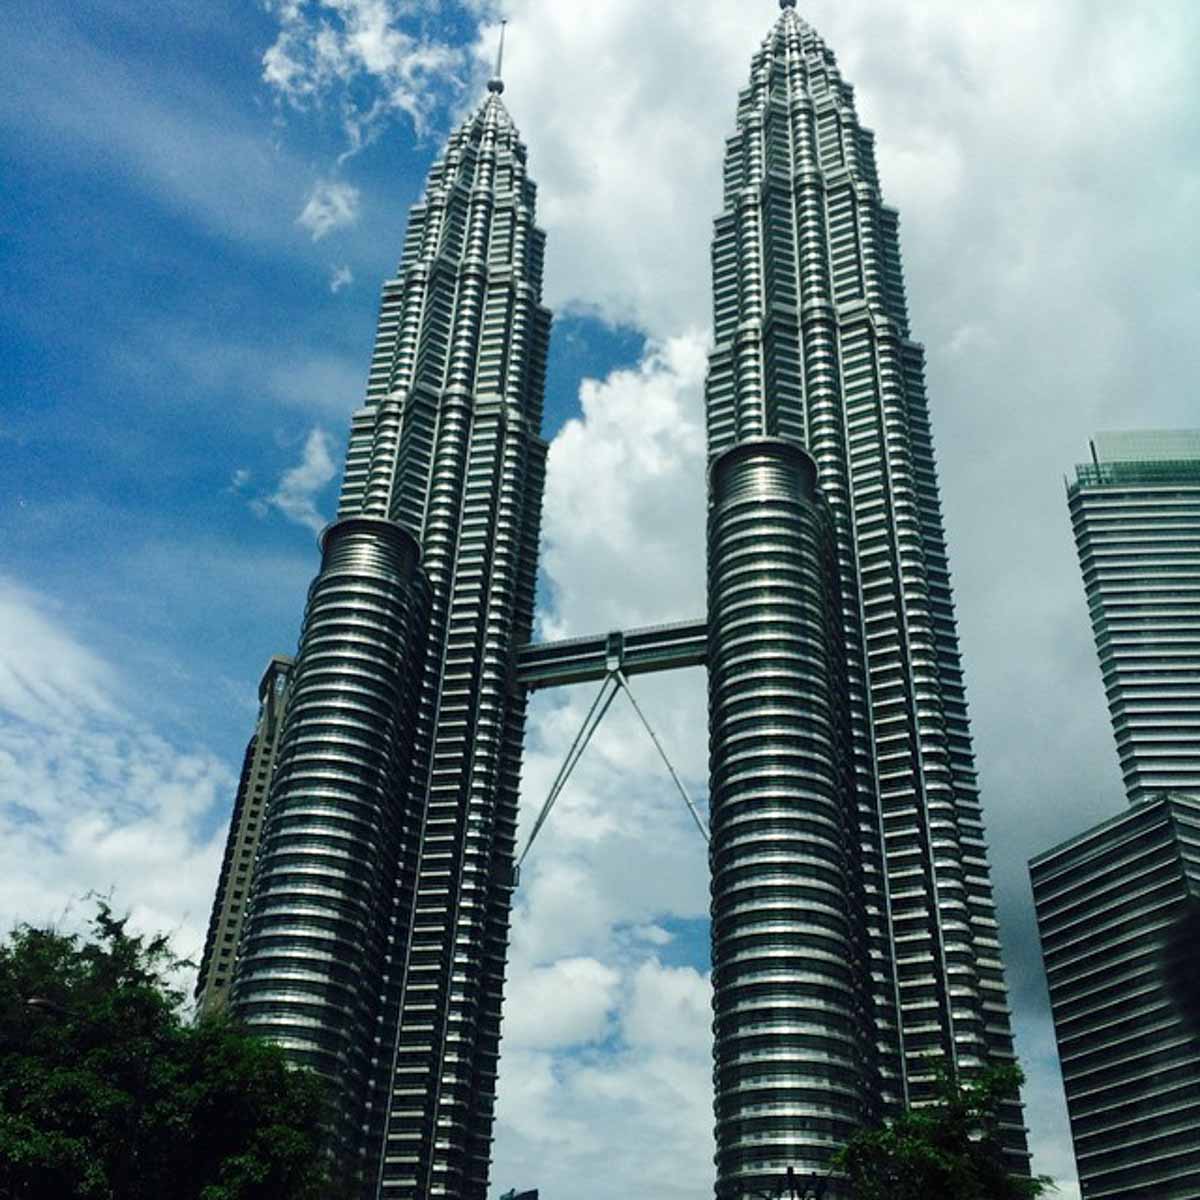 KLCC Petronas Twin Towers